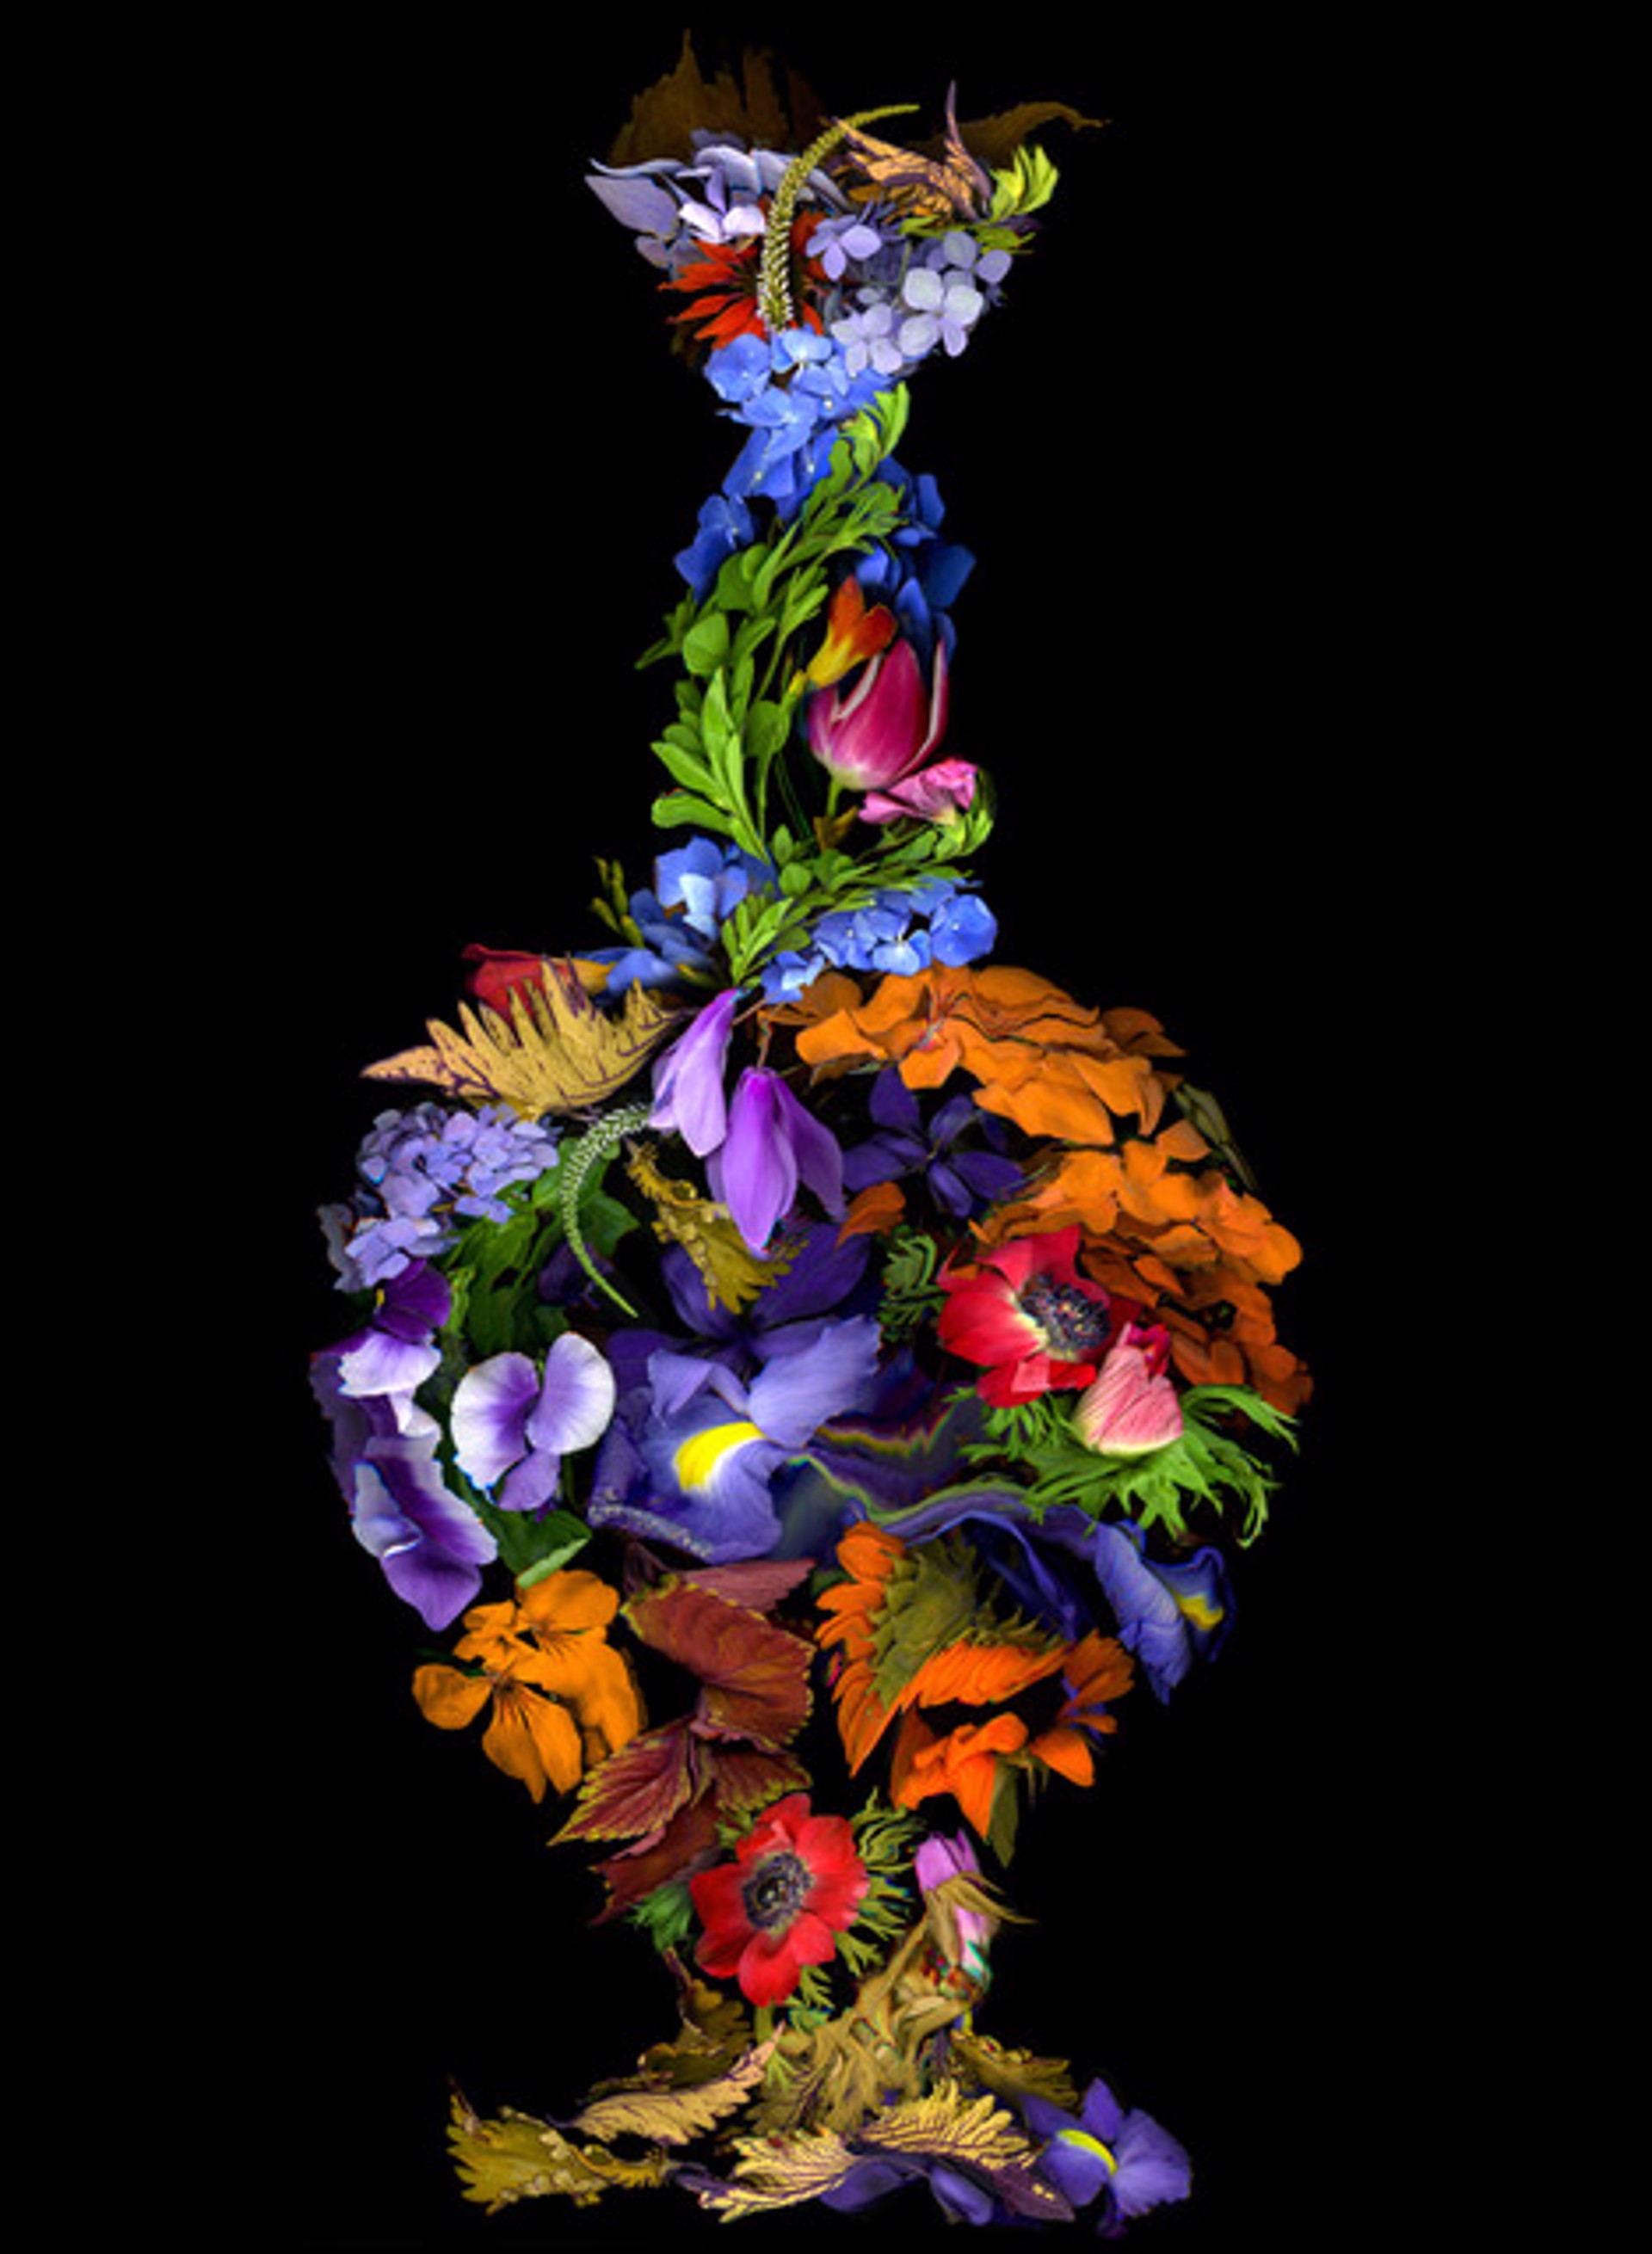 Floral by Kate Blacklock